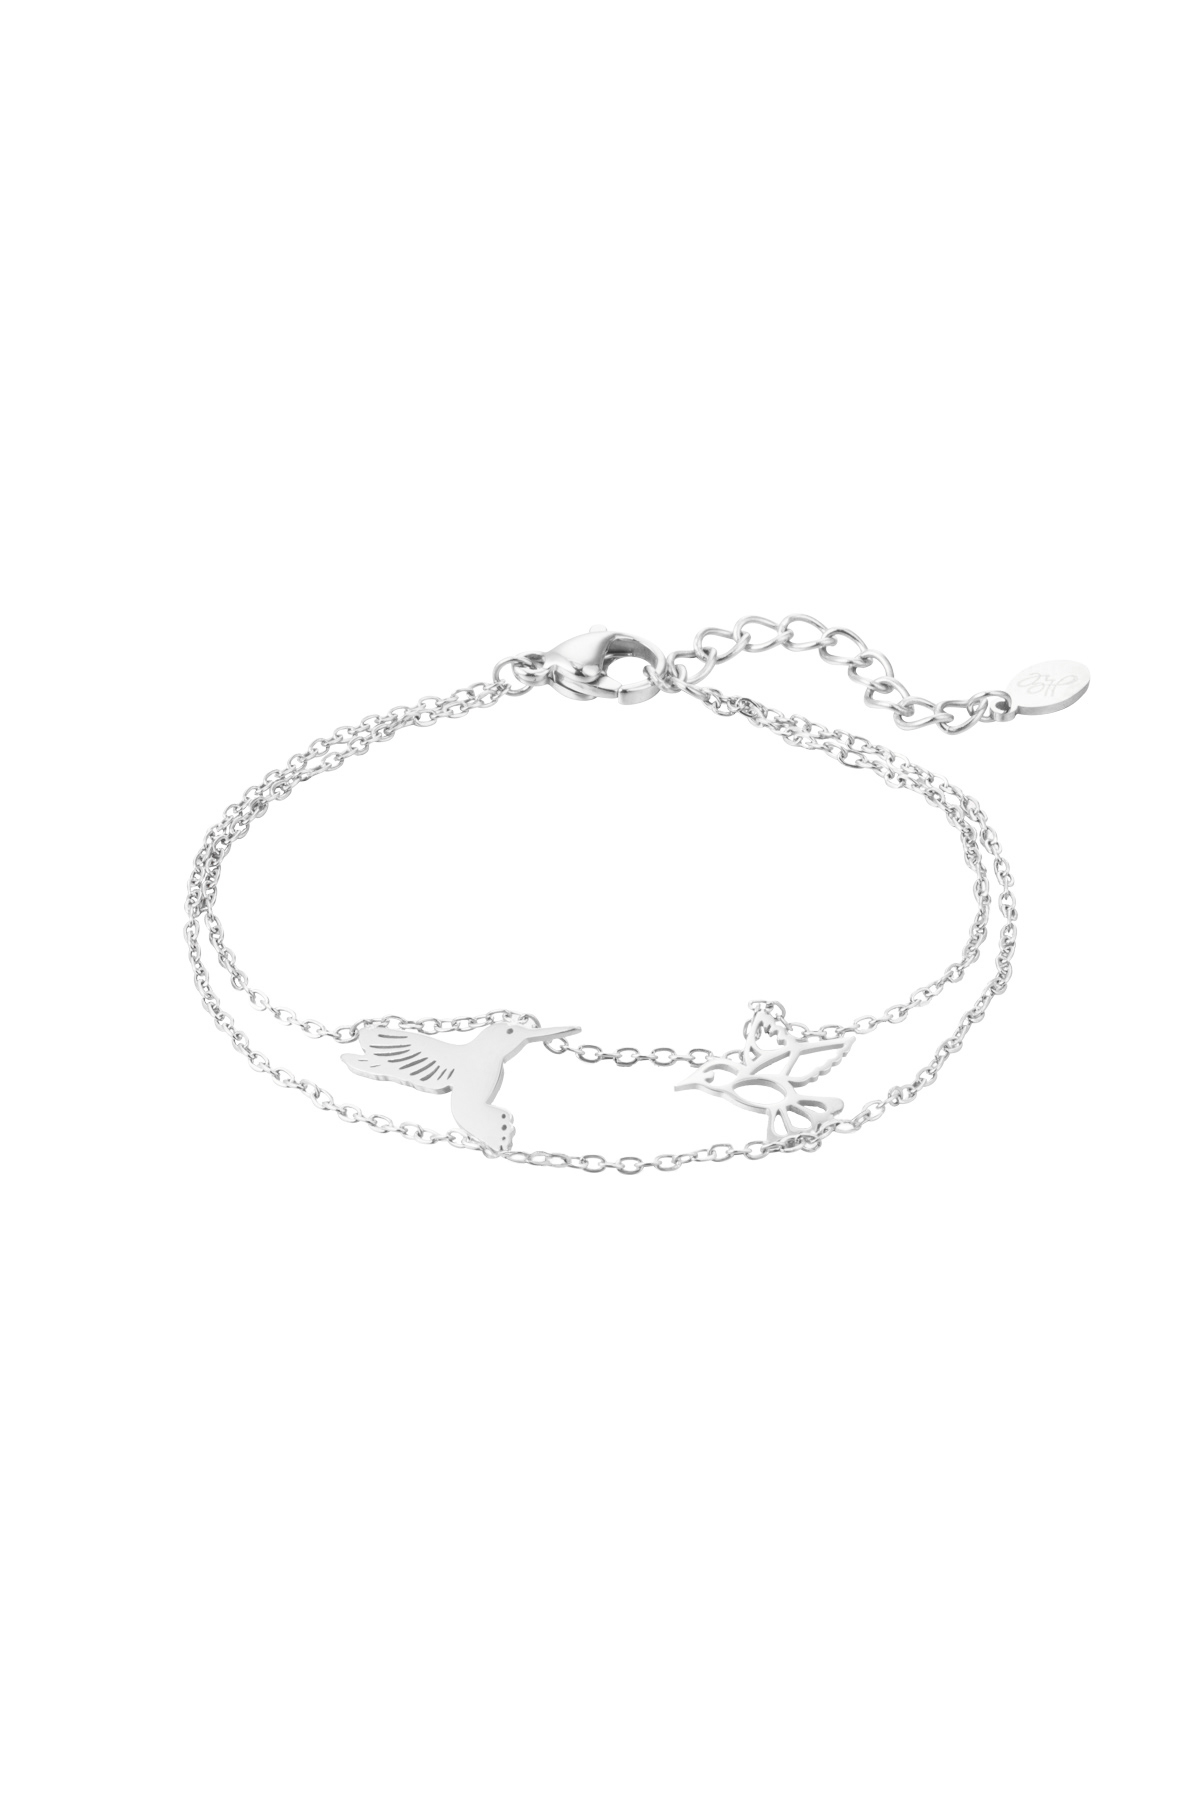 Bracelet 2 birds - silver h5 